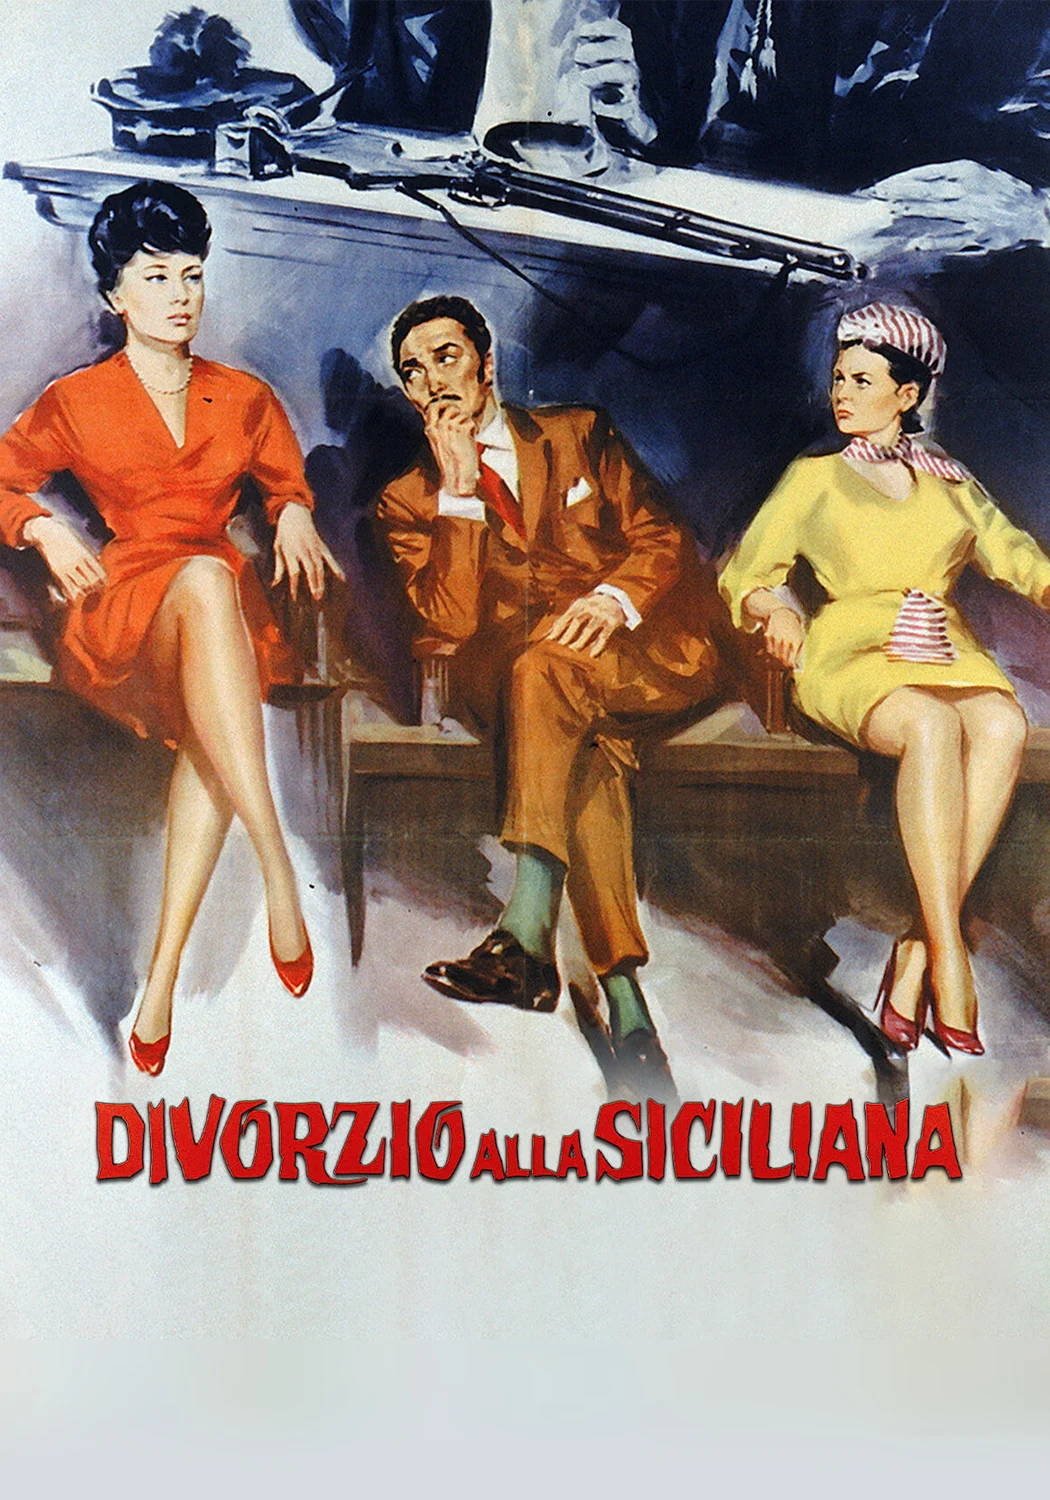 Divorzio alla siciliana (1963)